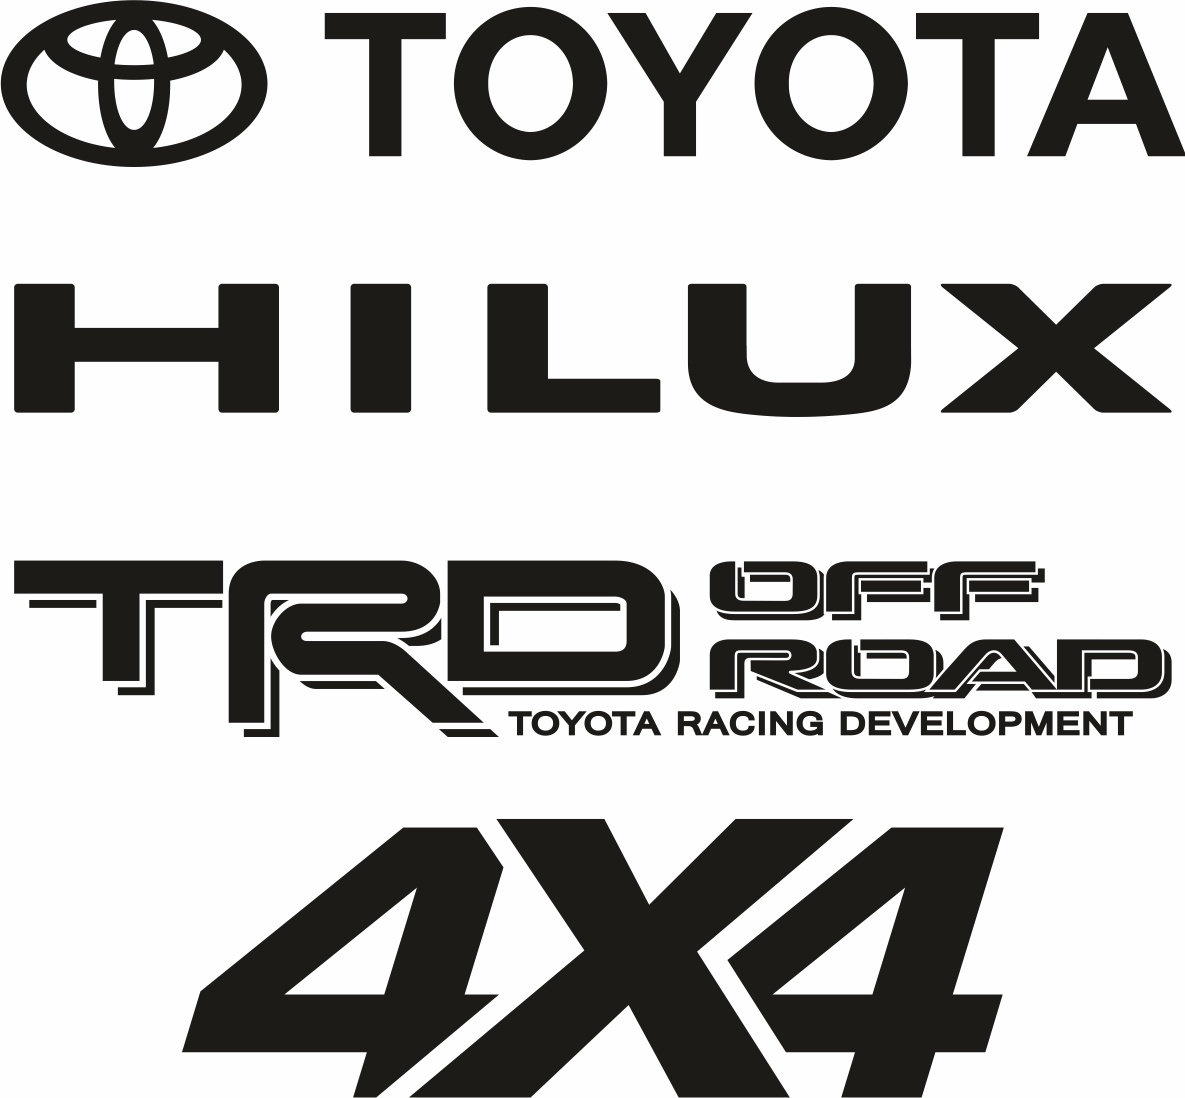 Naklejki na samochód Toyota Hilux STICKER DECALS STRIPES